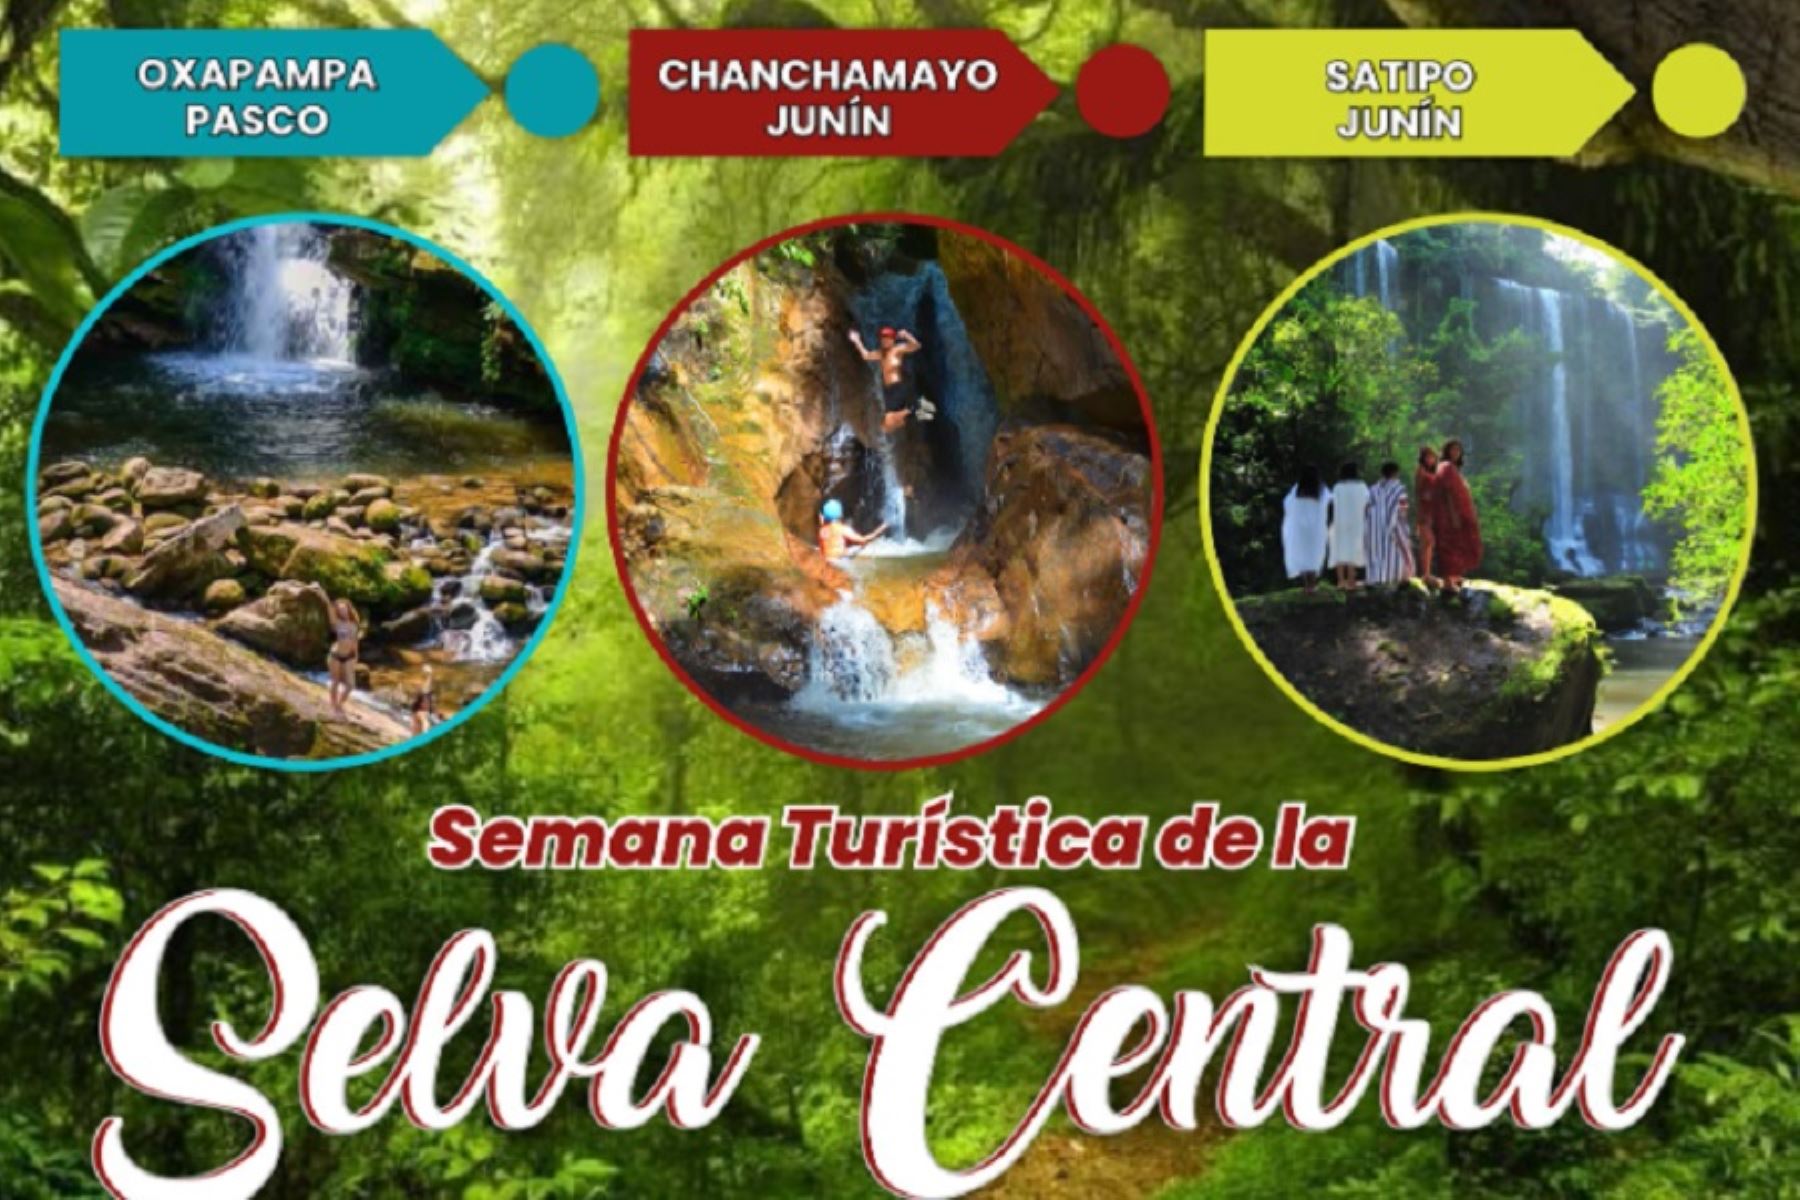 La Semana Turística de la Selva Central 2022 nos brinda la oportunidad de vivir una experiencia de ensueño visitando los diversos atractivos de las provincias de Chanchamayo, Satipo y Oxapampa, auténticas sucursales del edén.